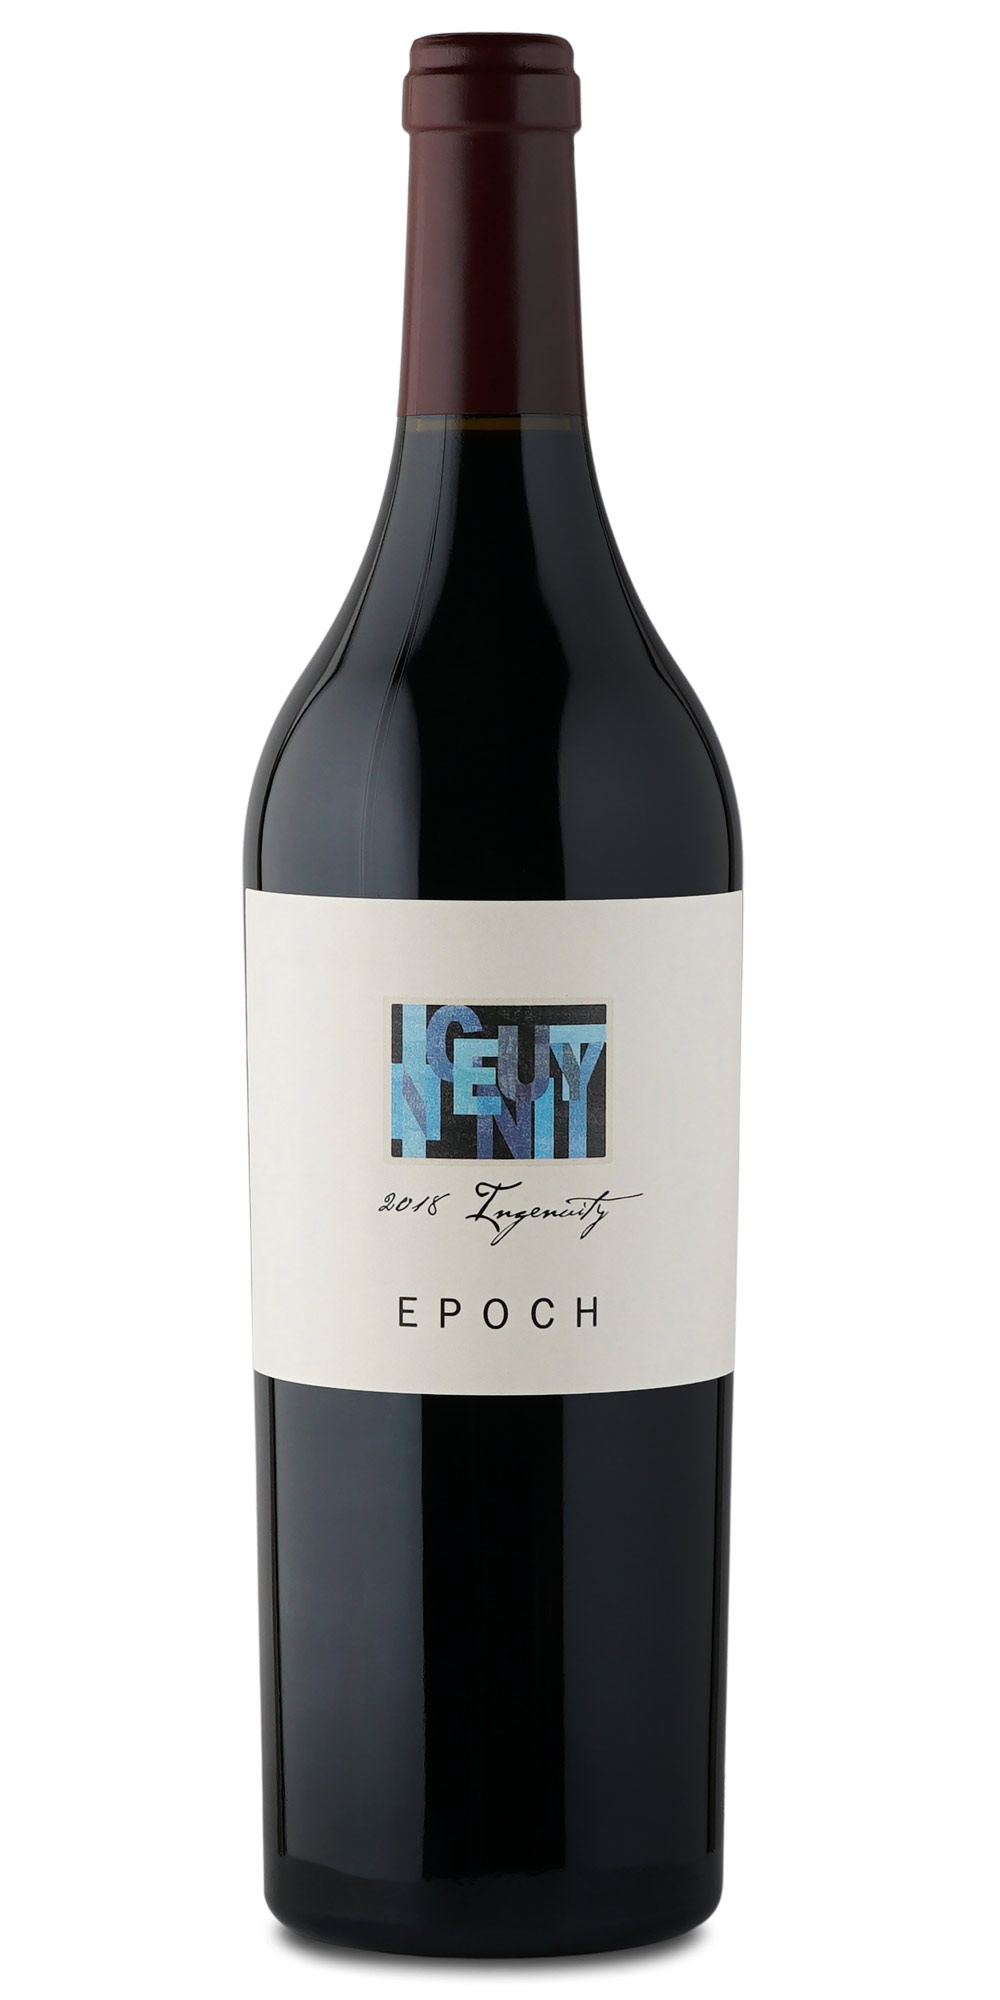 Bottle of Epoch 2018 Ingenuity